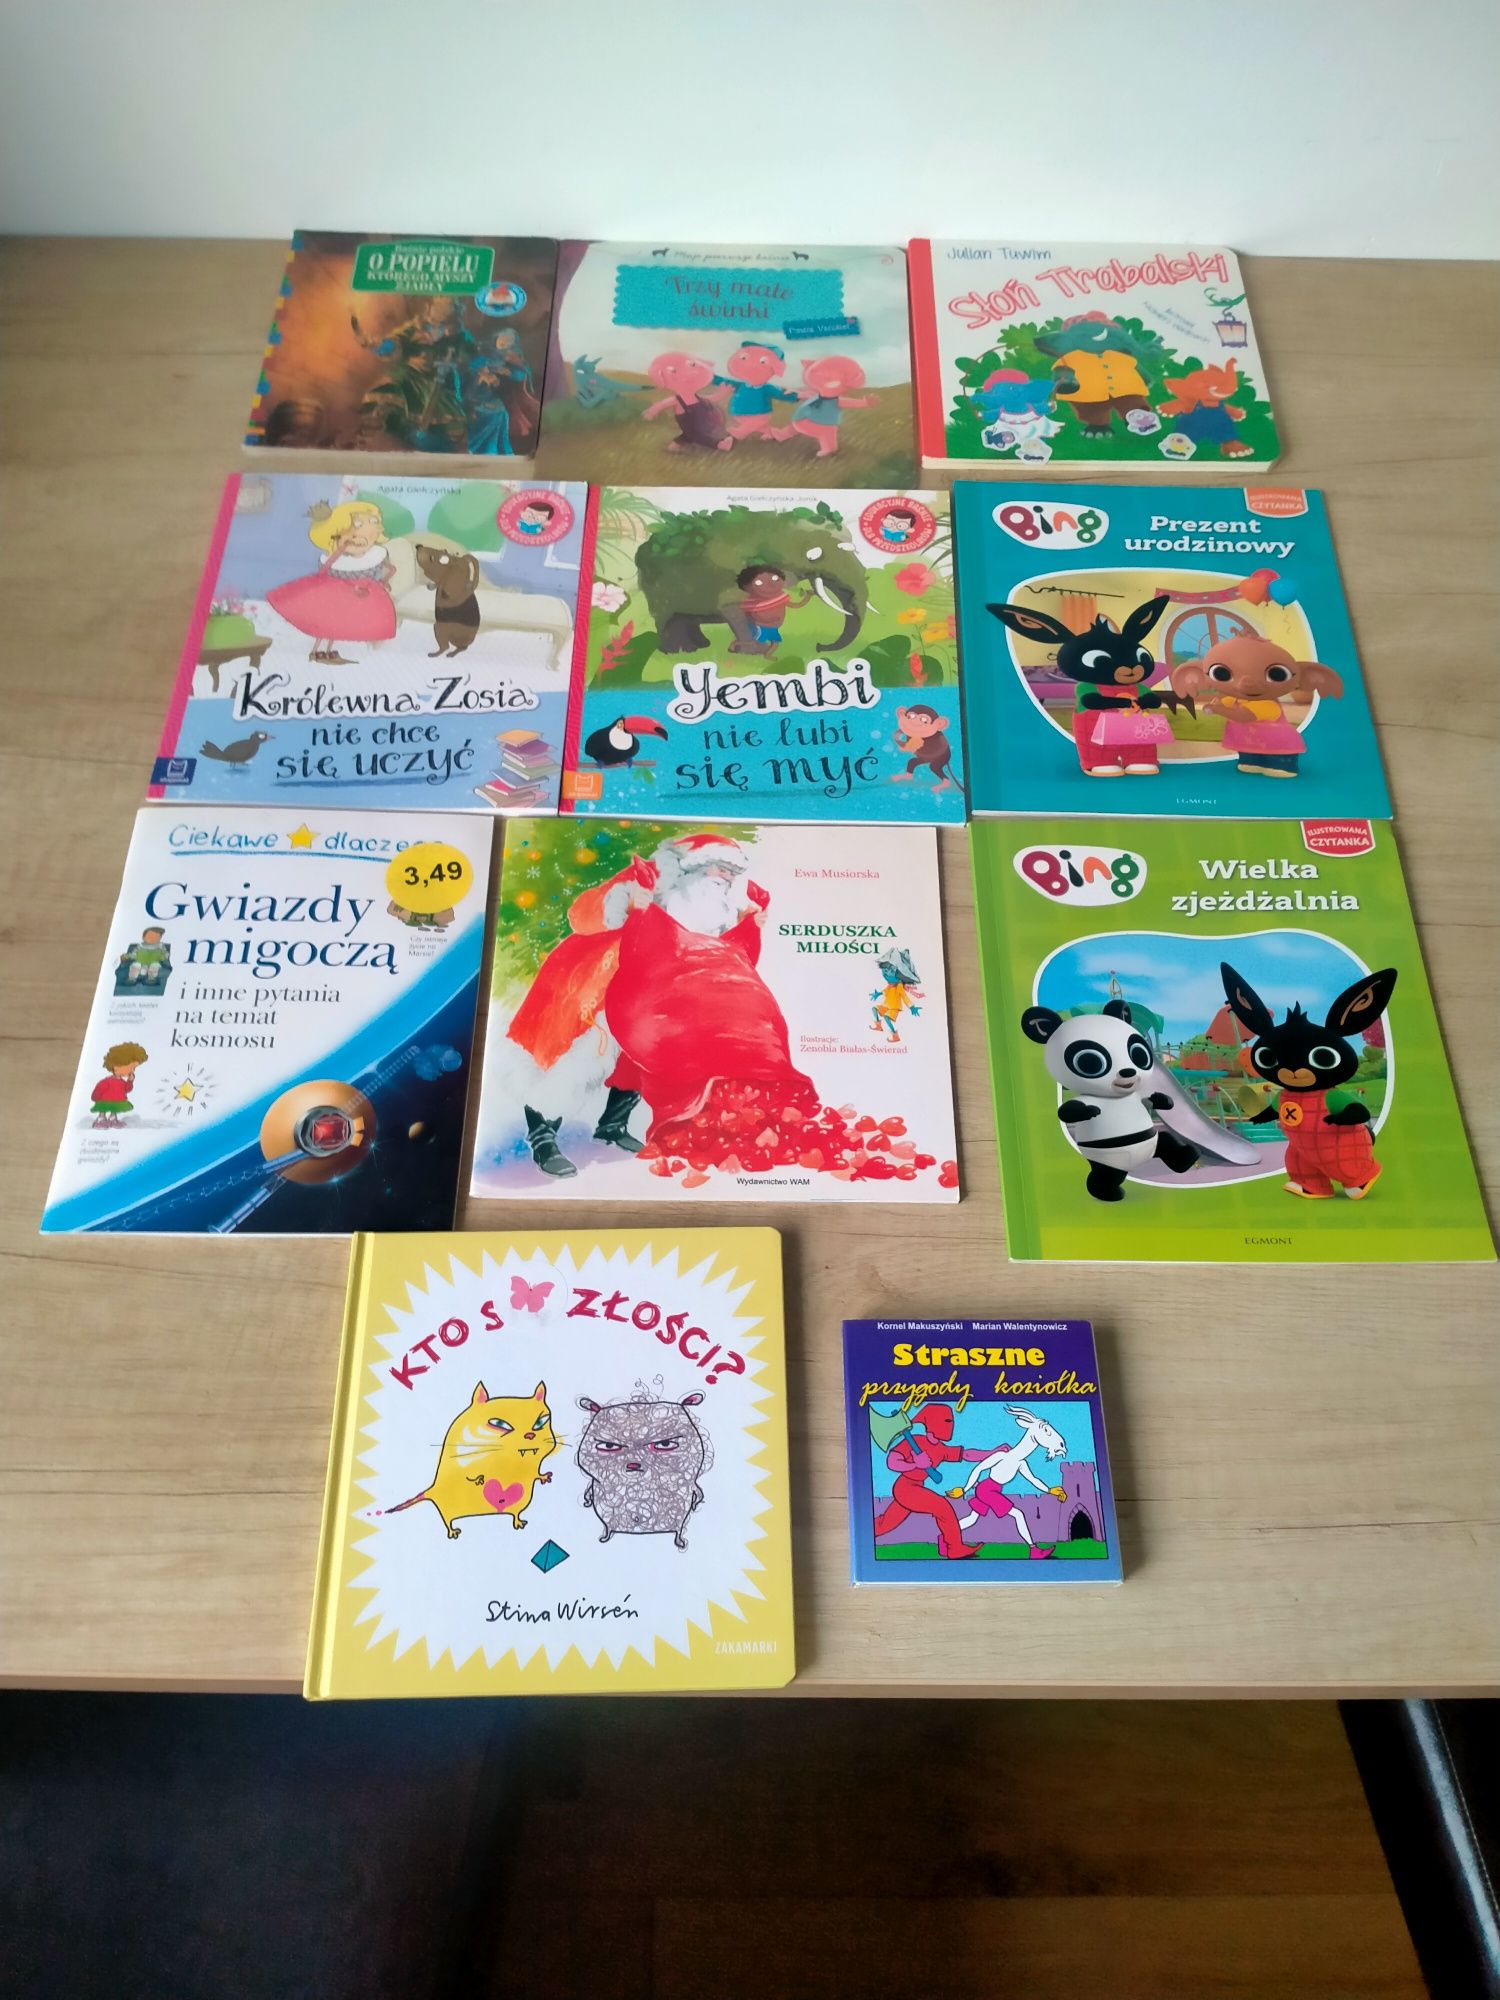 Książki dla dzieci zestaw. Bing, Tappi, Roszpunka, Martynka.